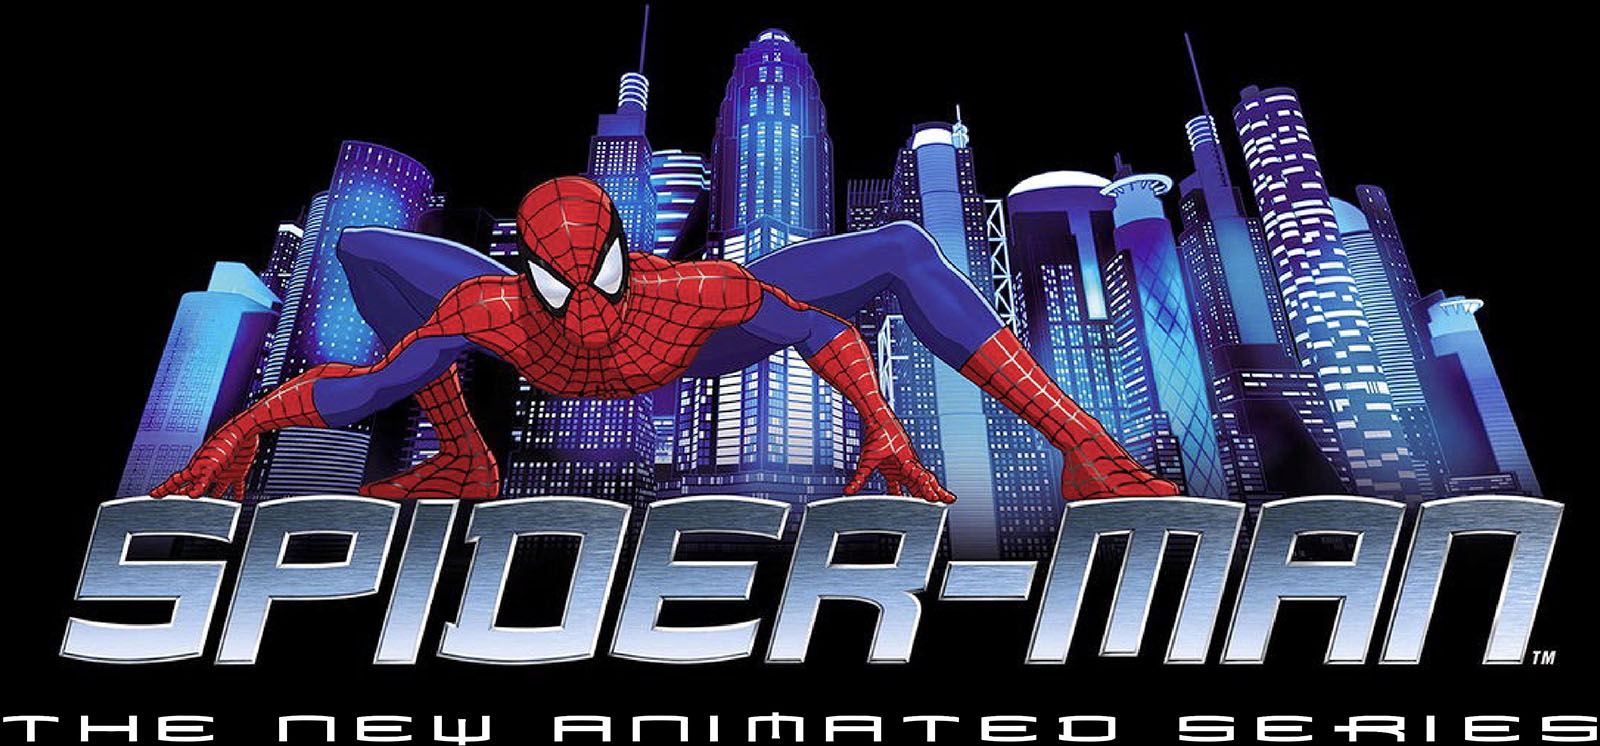 My First Spider-Man, 2003 | Tim Eldred